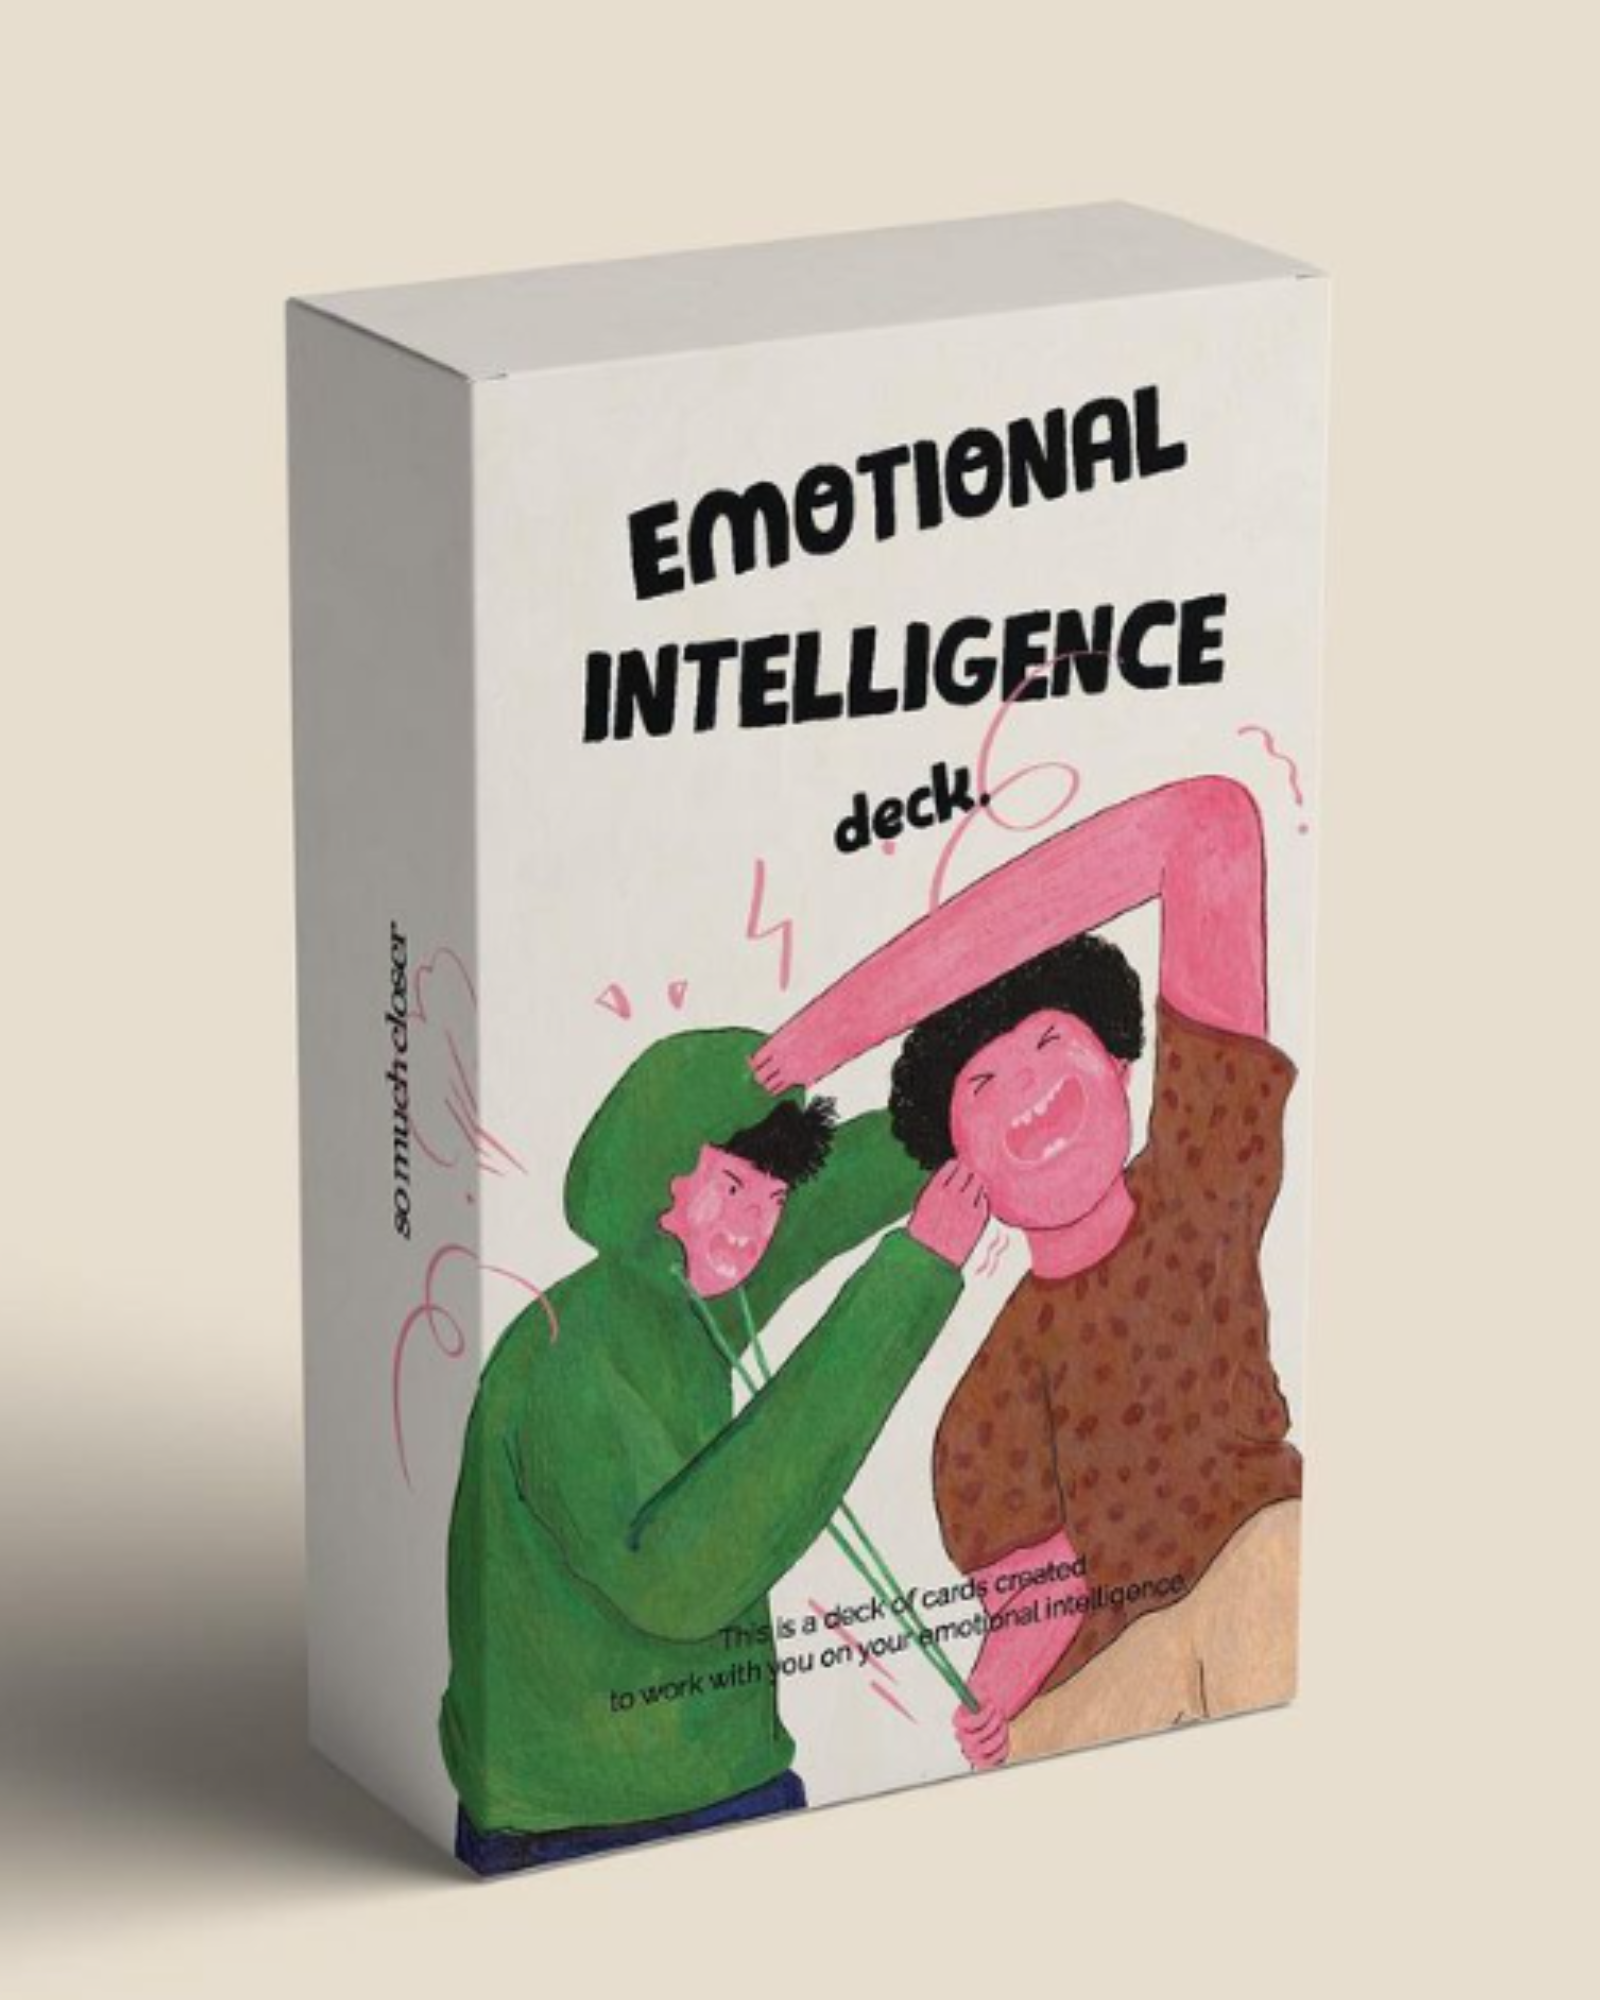  Emotional Intelligence Deck Cards 